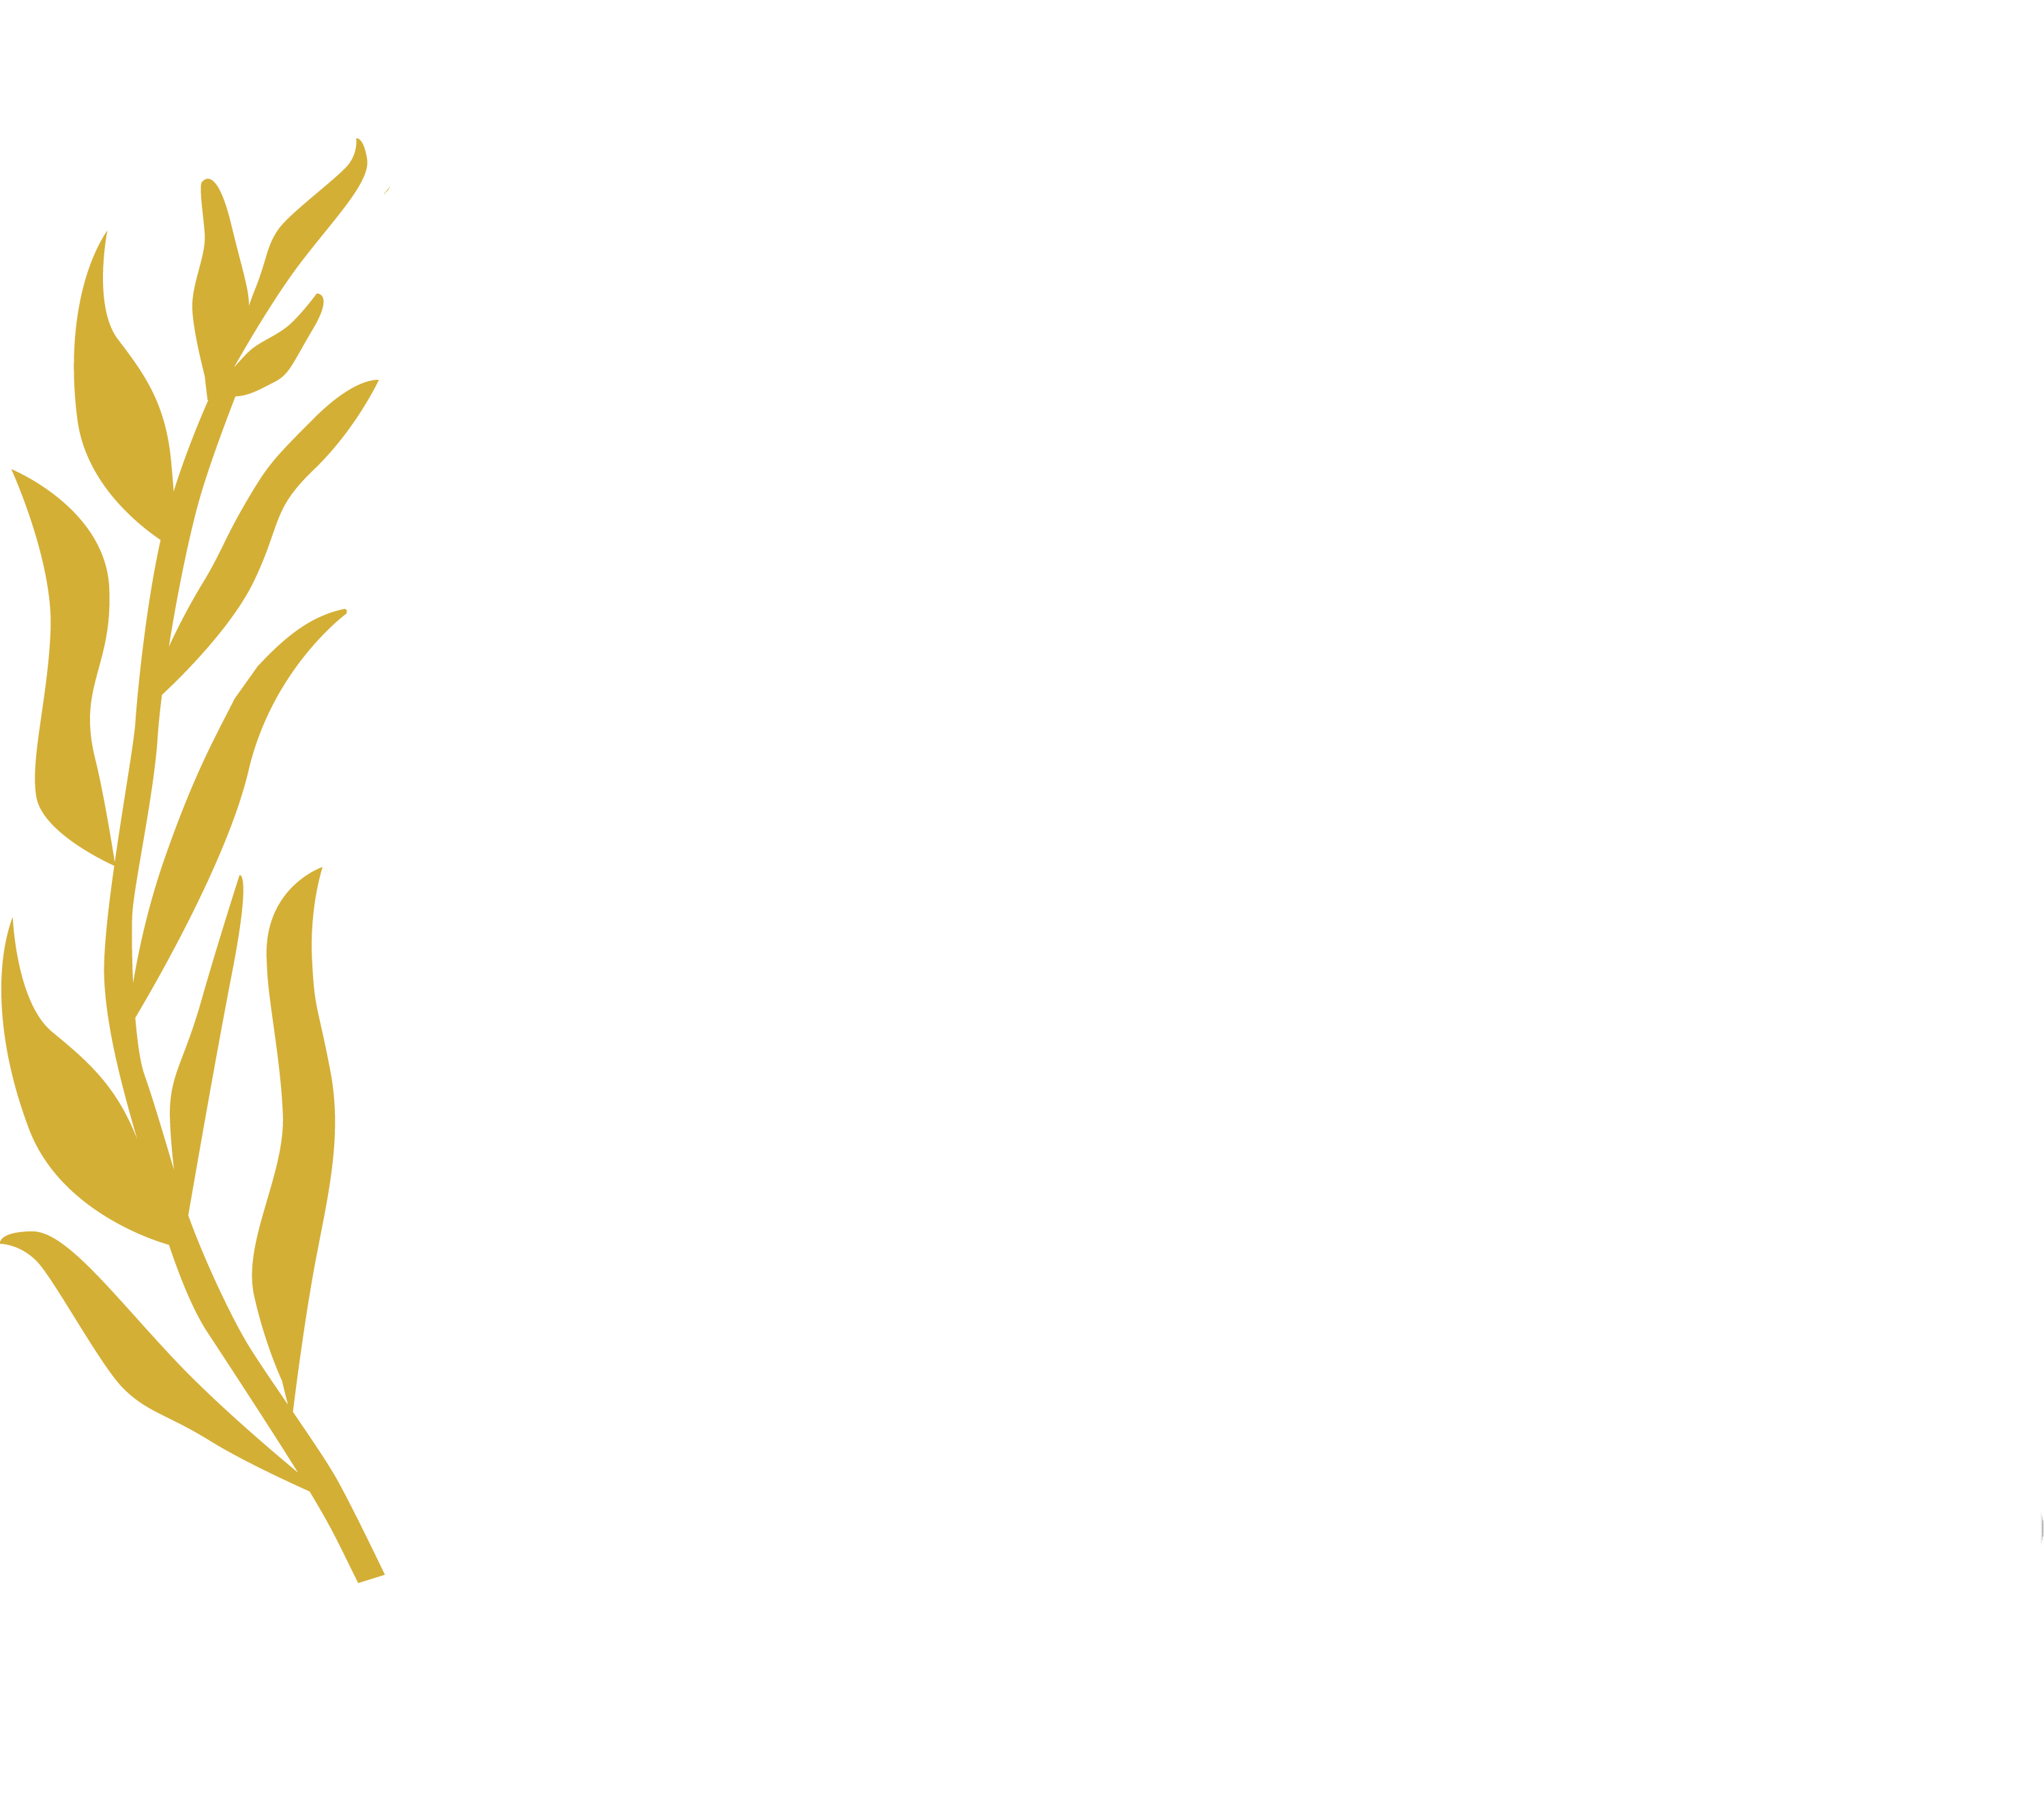 Beverly Hills Film Festival 2022